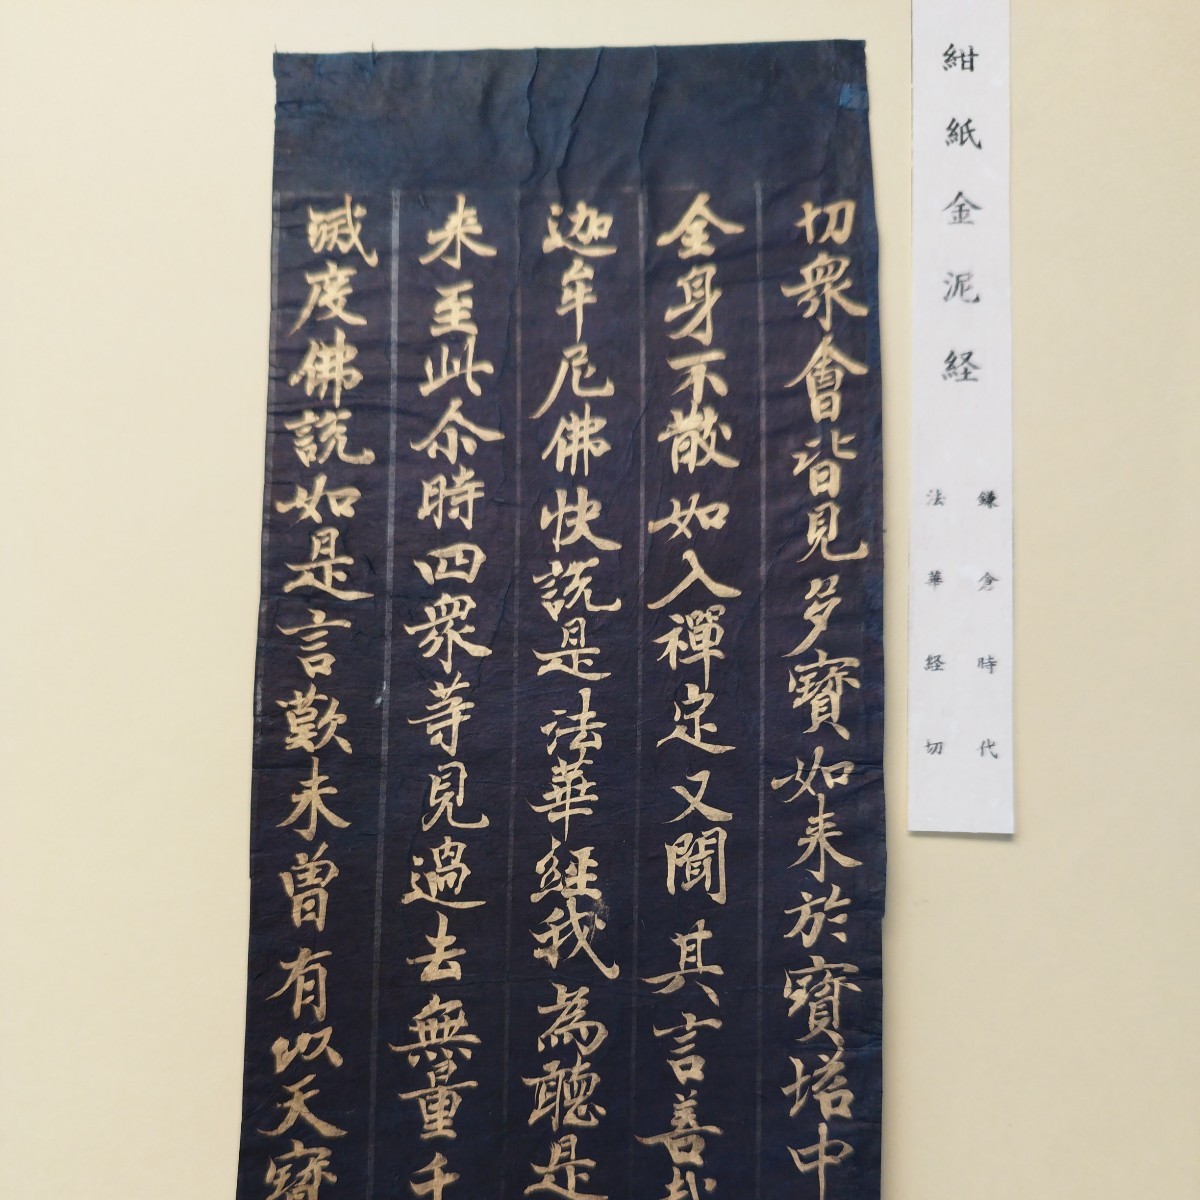 古写経　写経 仏教美術　平安経　写経2枚セット鎌倉時代法華経と書いてアリます。もうひとつは分かりません。 掛軸 美術品 拓本　古美術品_画像9